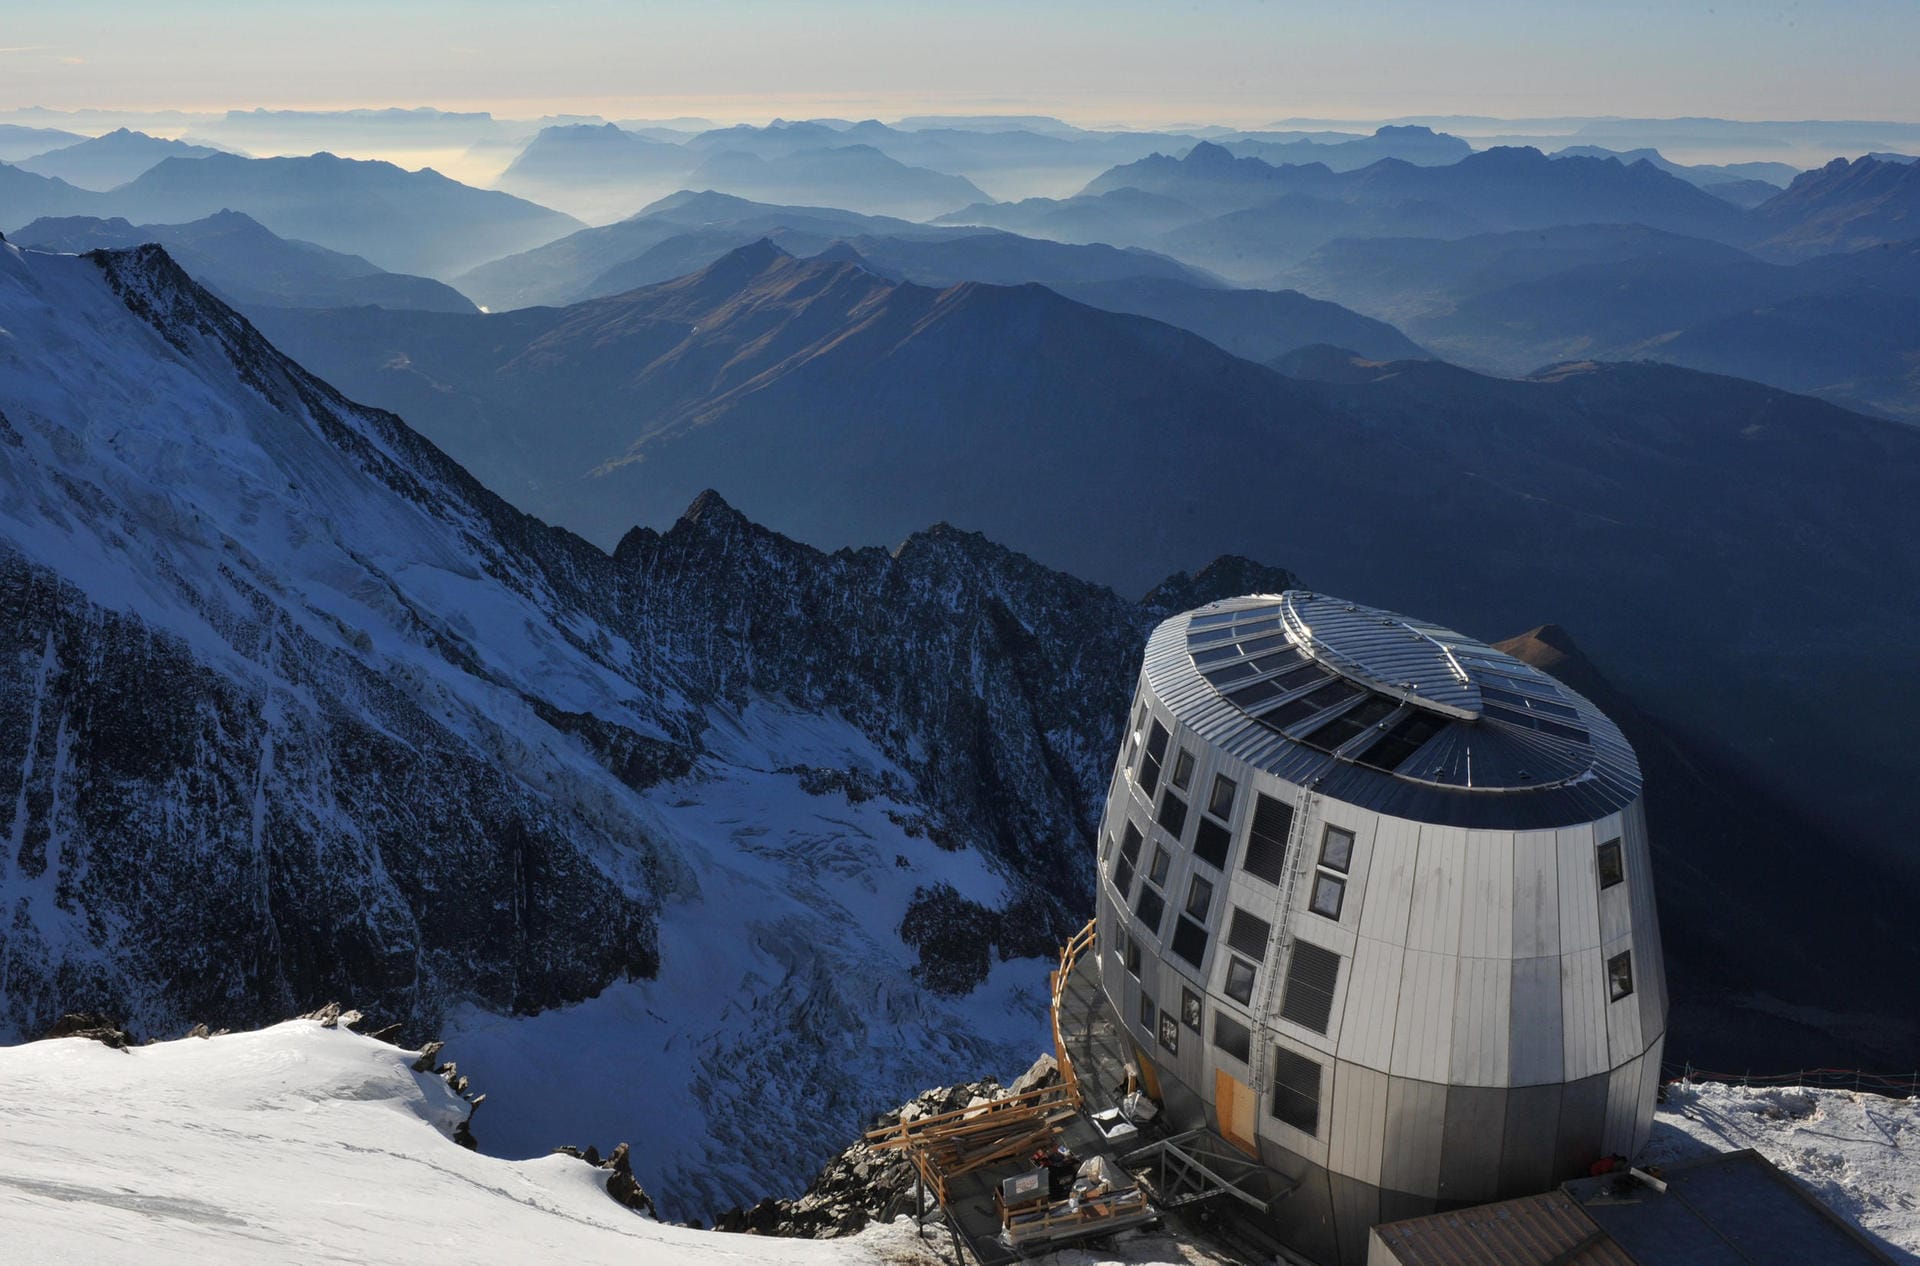 Der Refuge du Goûter ist der höchstgelegene bewirtschaftete Stützpunkt zur Besteigung des Mont Blanc.